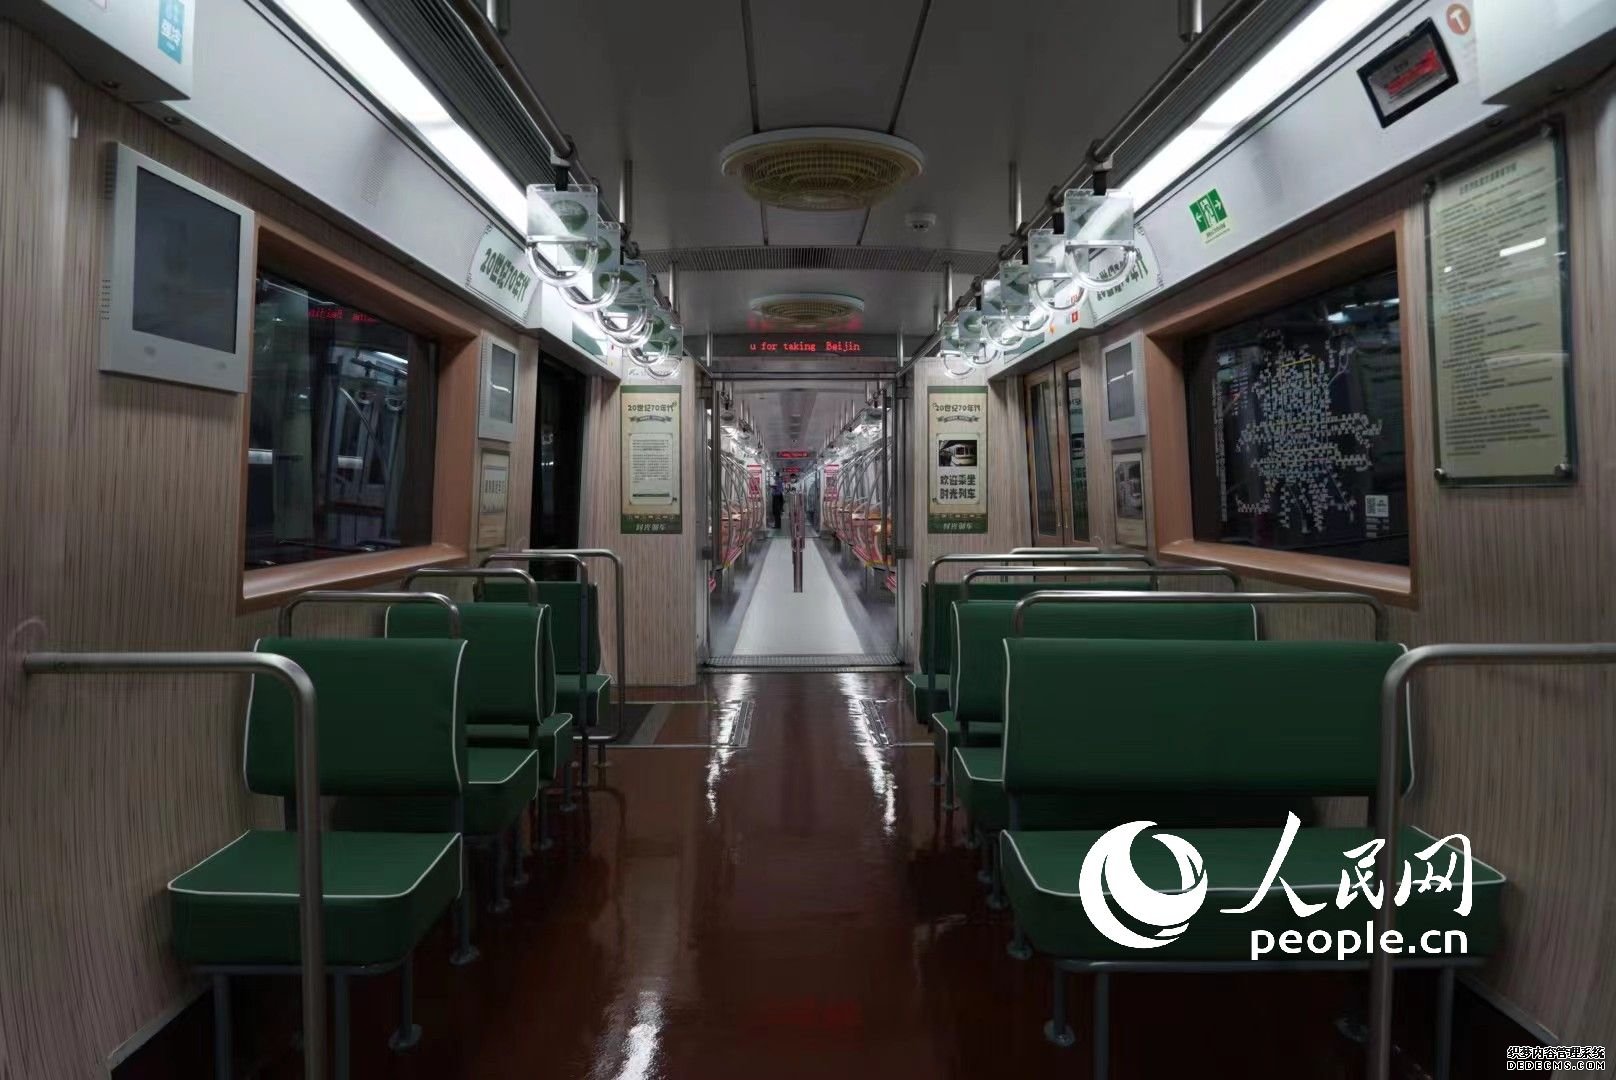 列车里的老式座椅。 人民网记者王天乐摄